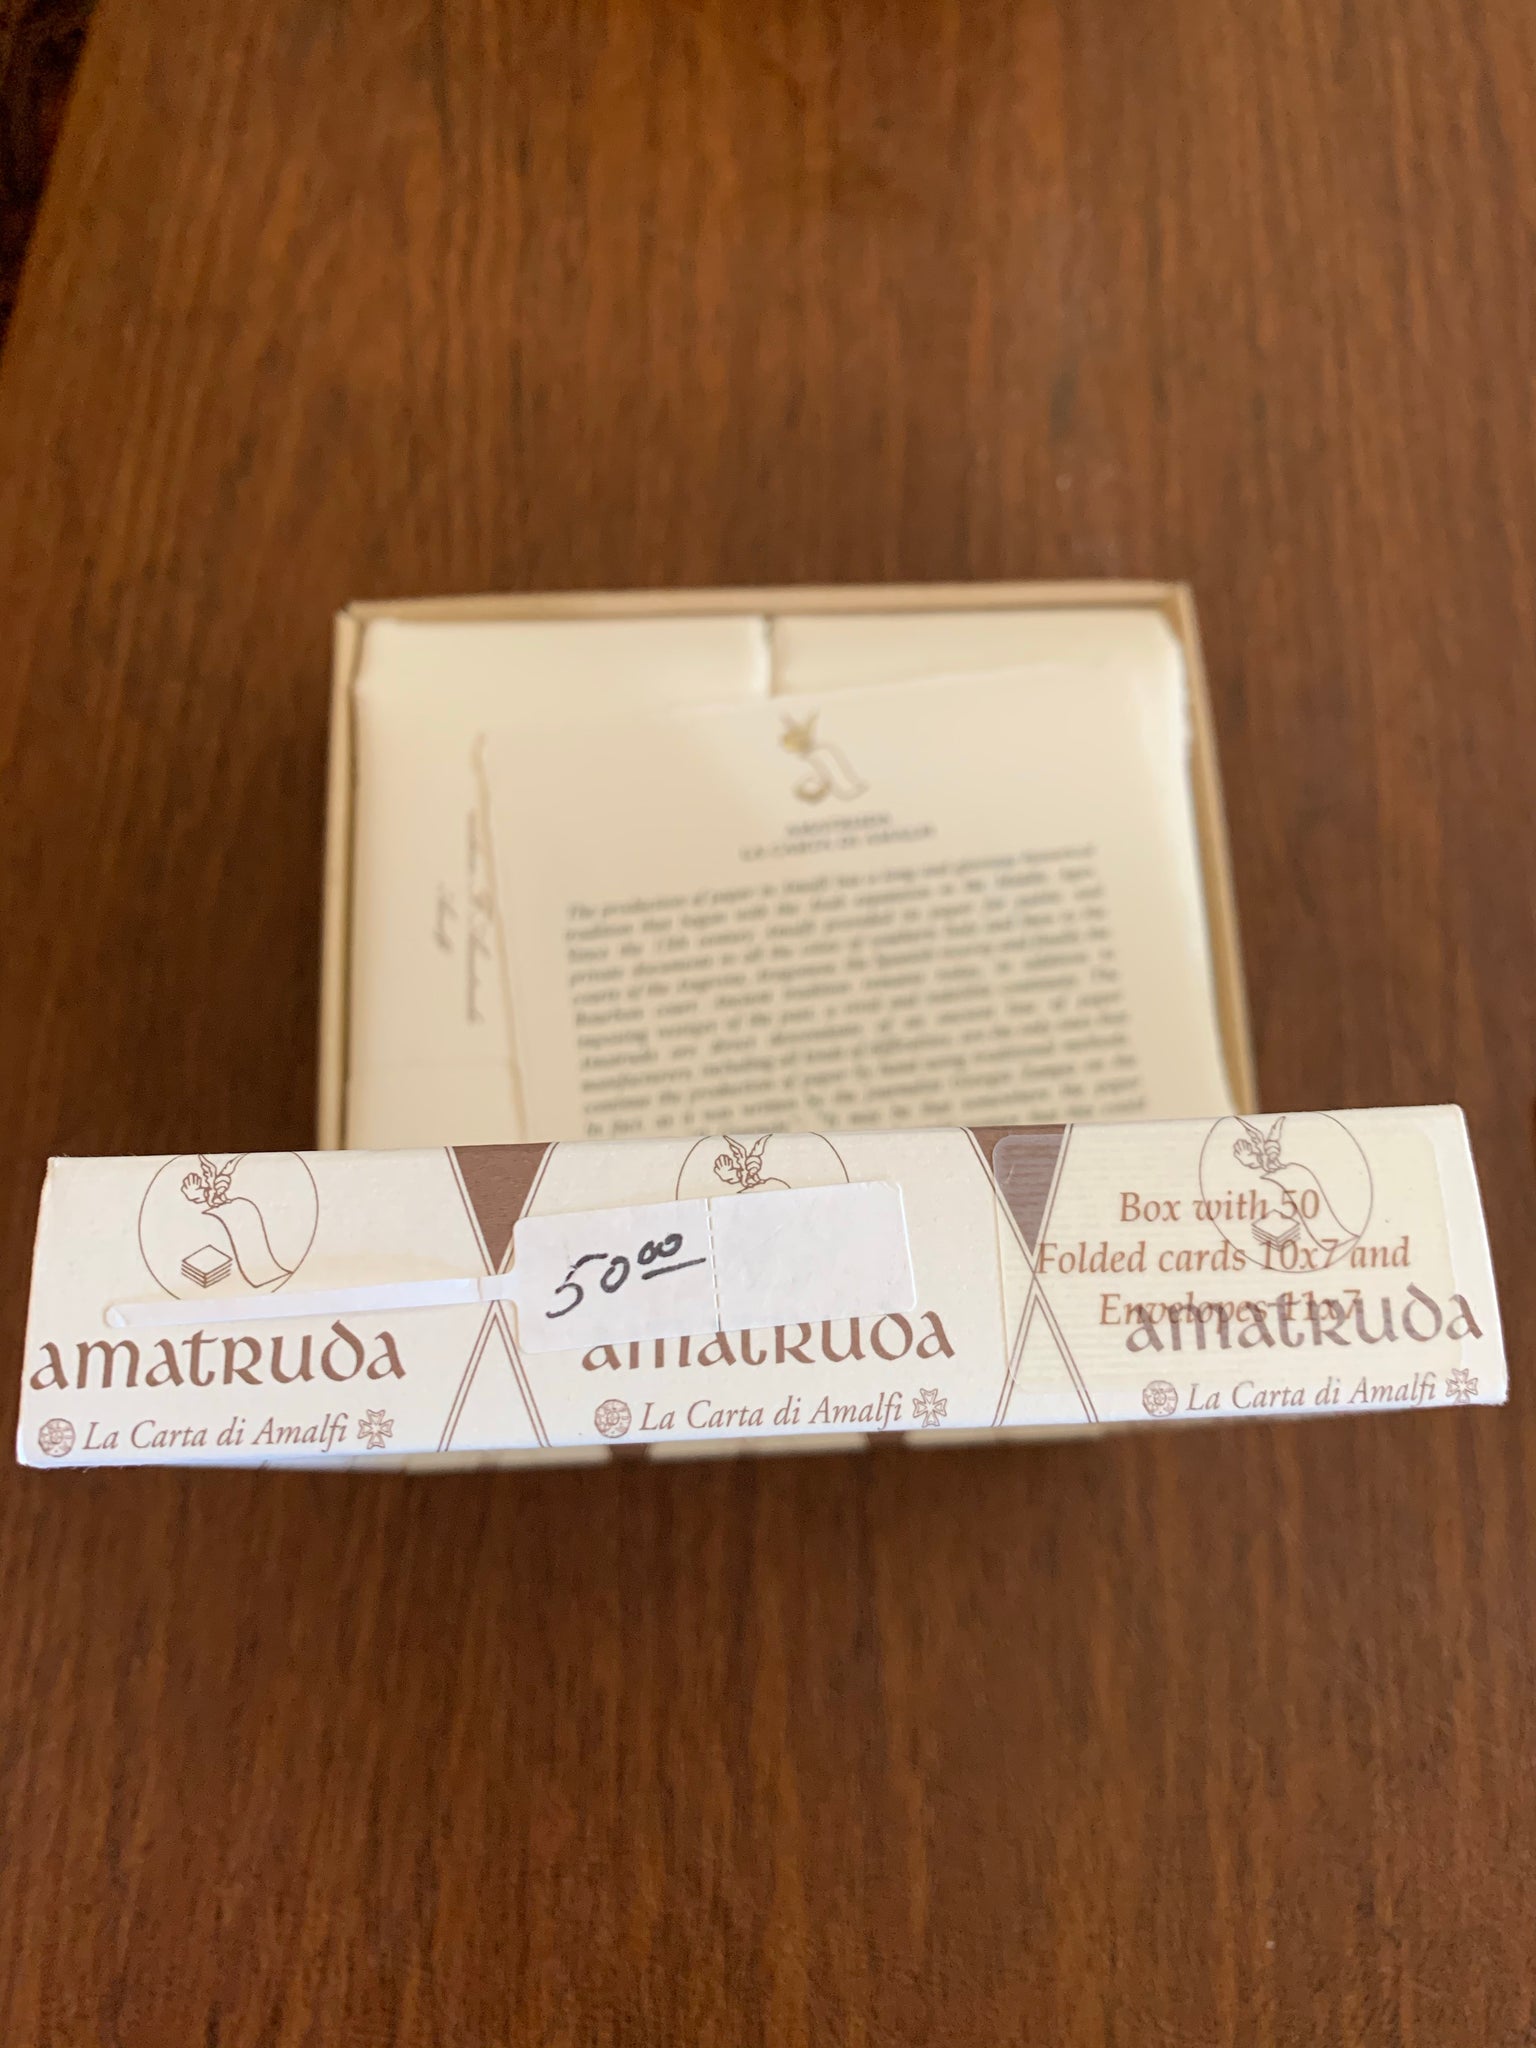 Amalfi Box of 50 Folded Cards/Envelopes 4 1/4" x 2 3/4" by Amatruda